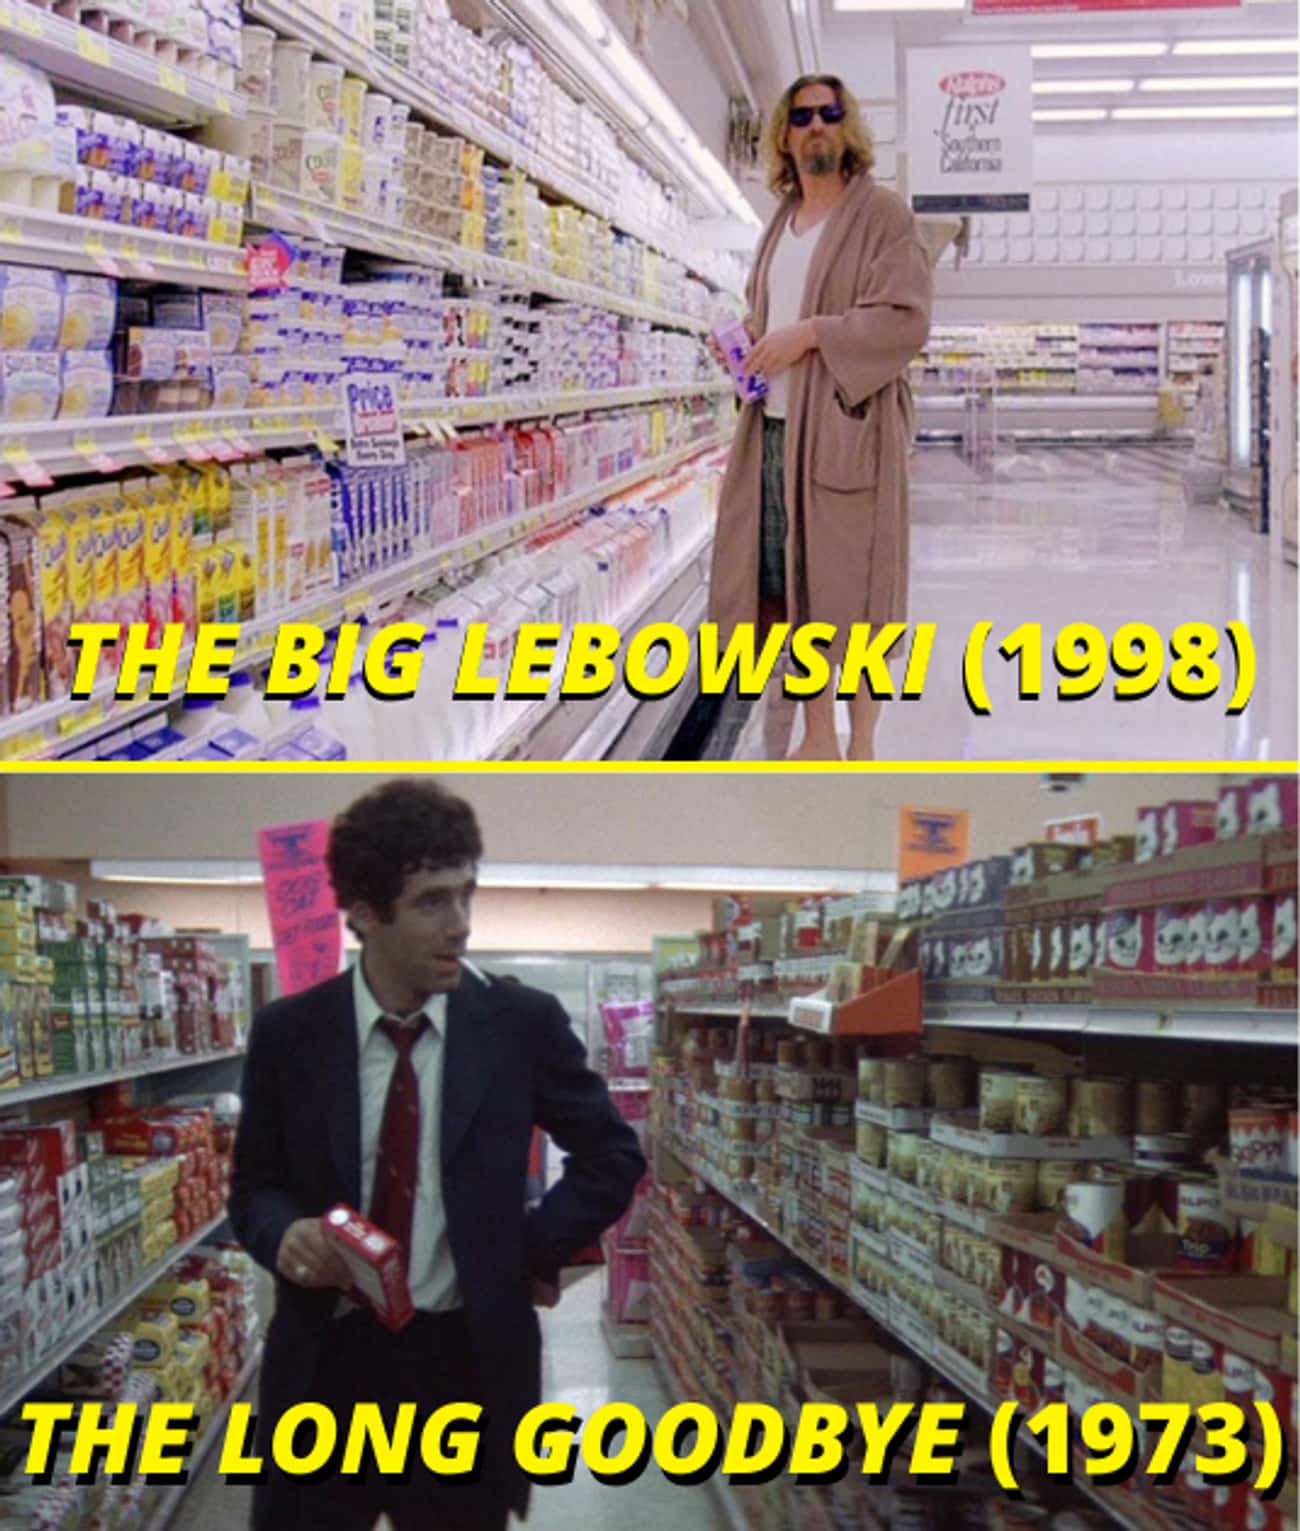 'The Big Lebowski' (1998) And 'The Long Goodbye' (1973)